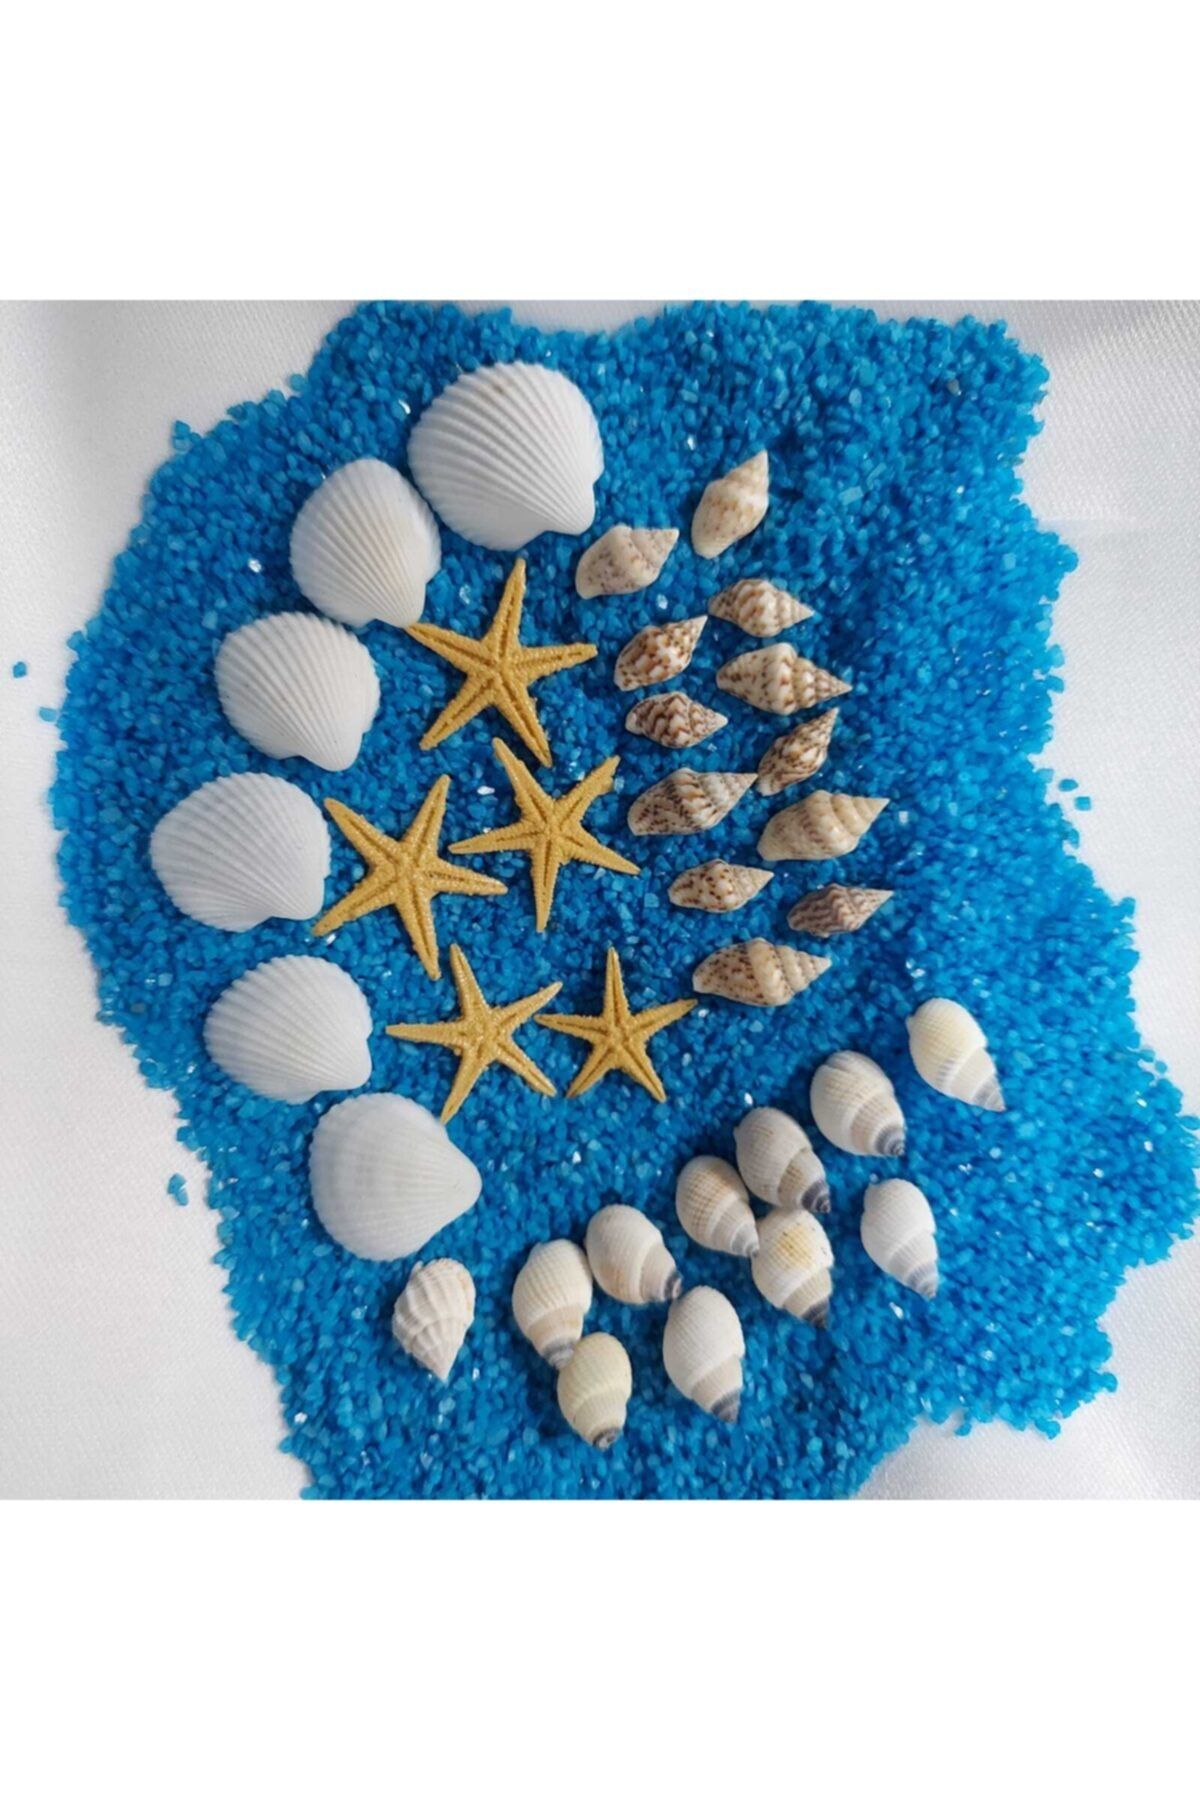 Aker Hediyelik 07mm-2,5cm Süs Deniz Kabuğu 300gr Deniz Kabukları Silis Kabuk + 300gr Teraryum Mavi Kum+yıldız